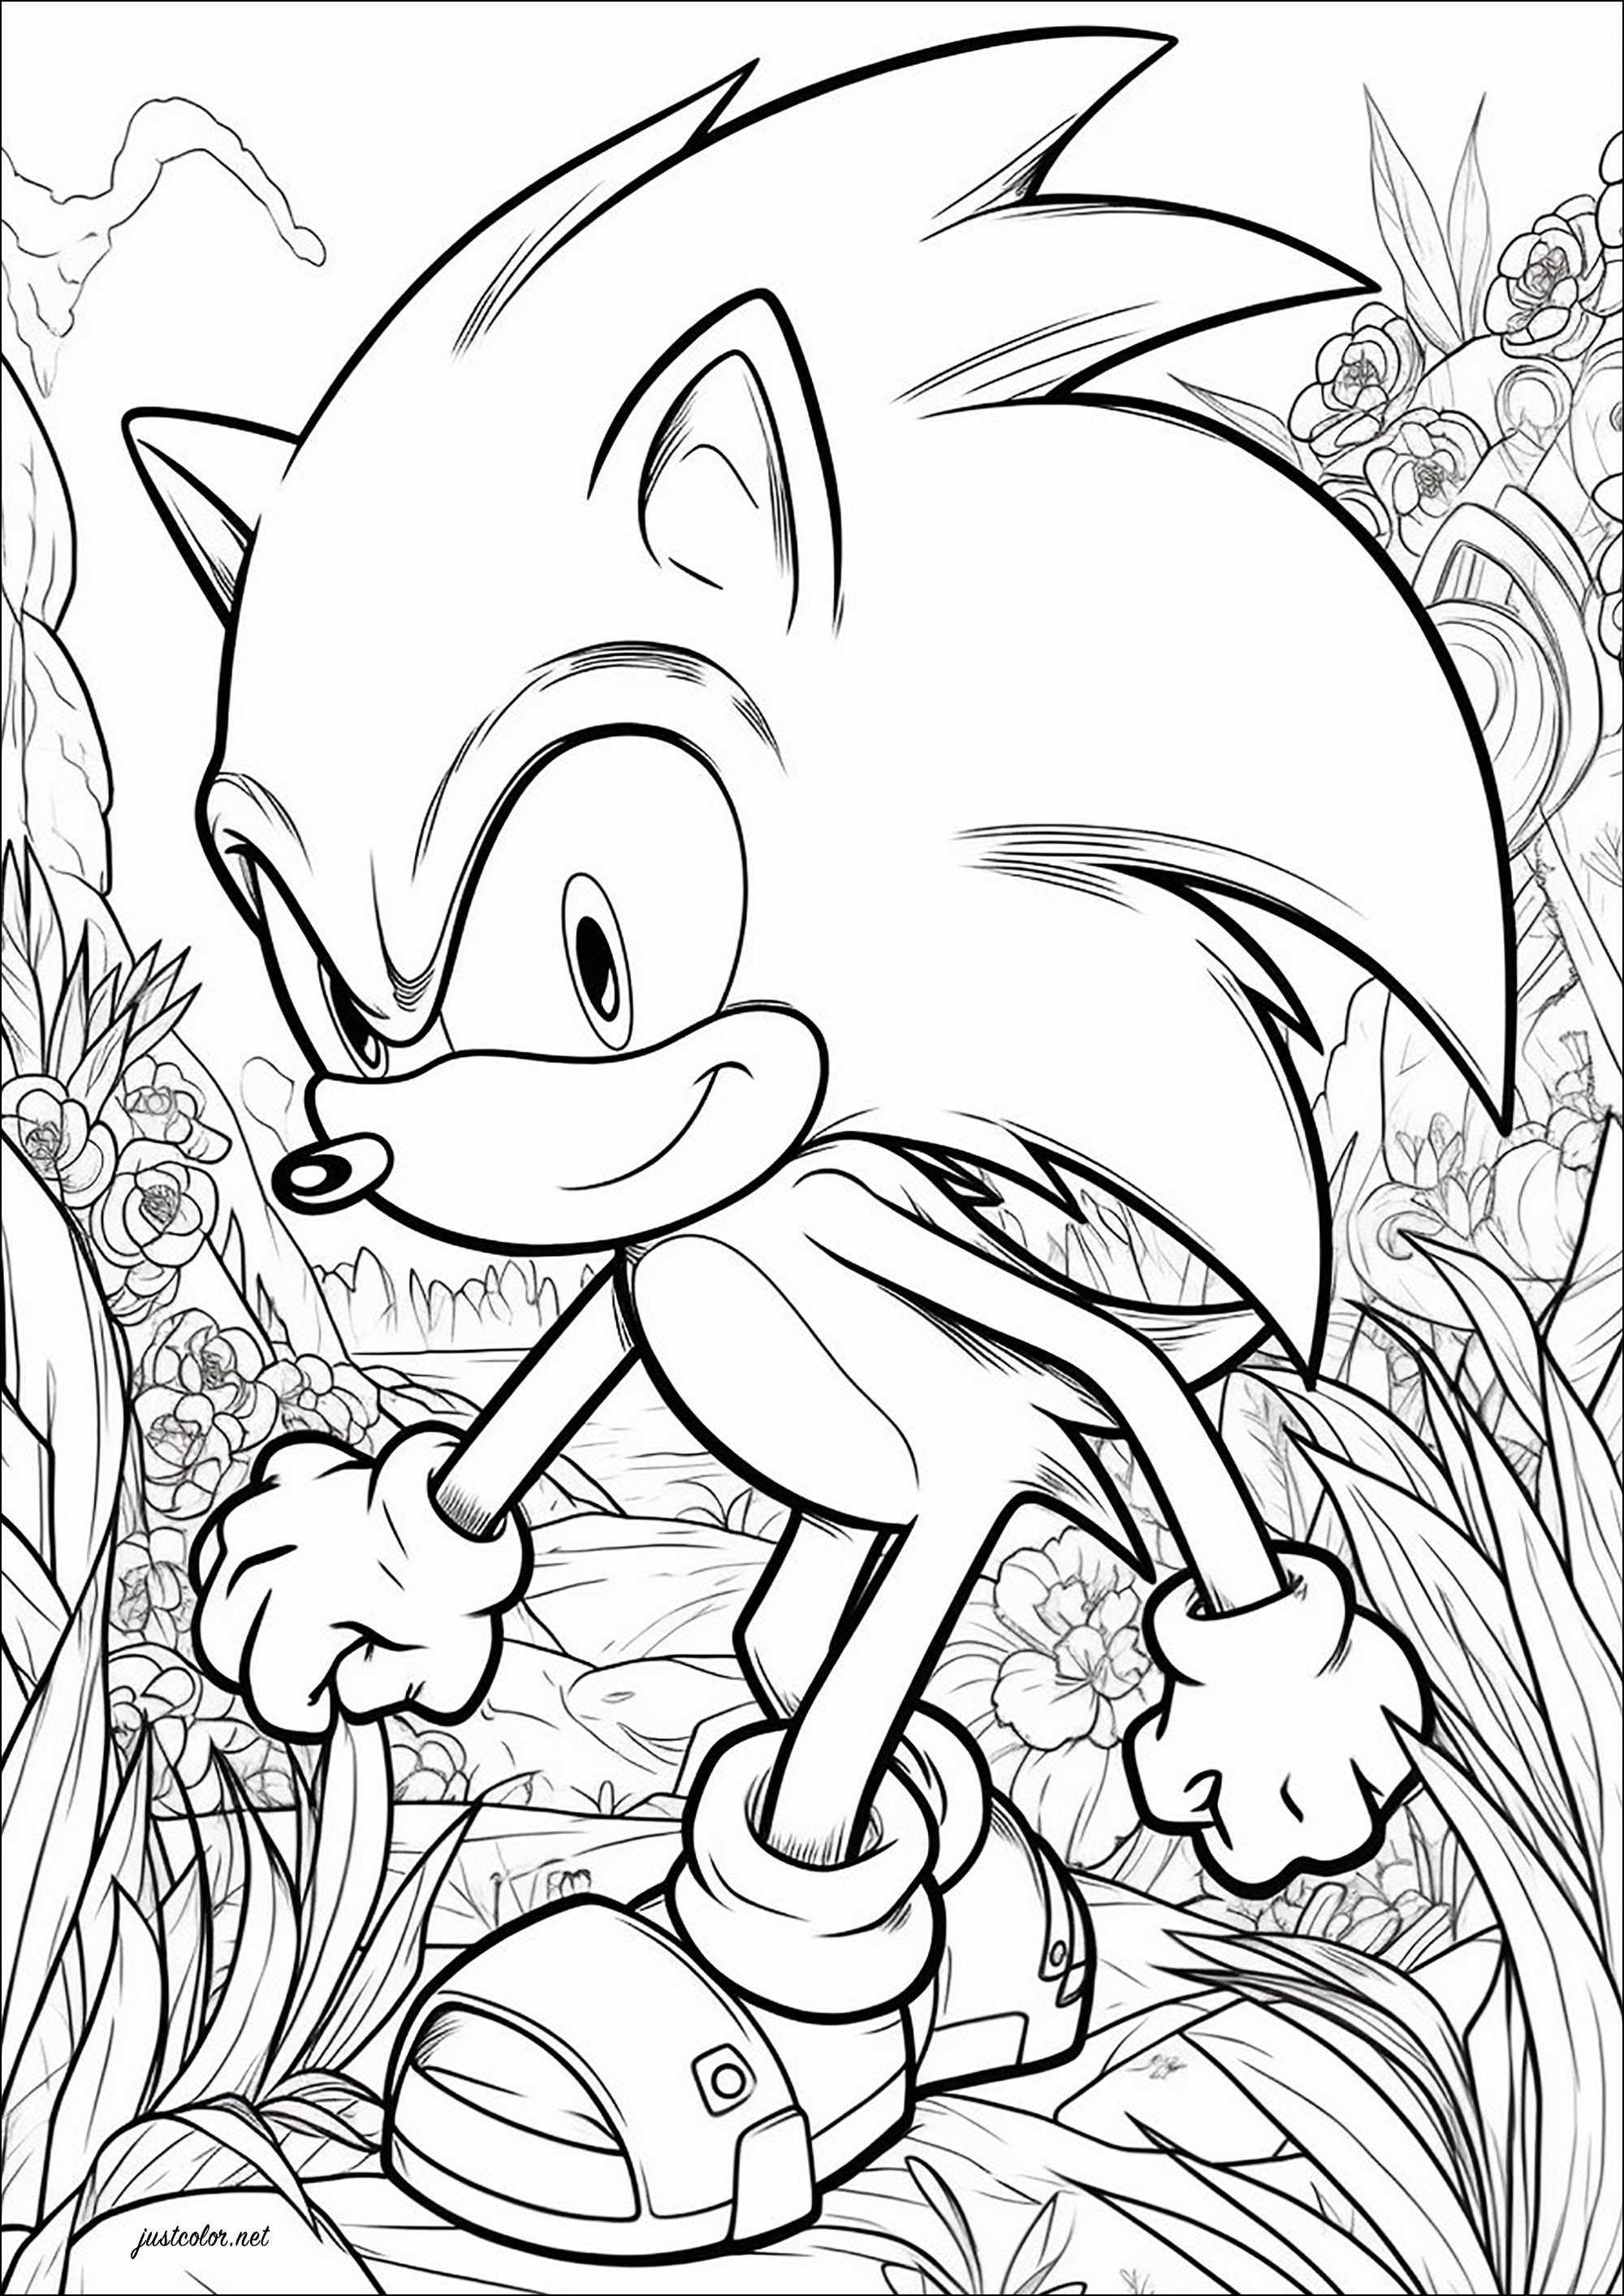 Sonic el erizo y un bonito fondo floreado. Sonic the Hedgehog es una serie de videojuegos desarrollada por la empresa japonesa Sega desde 1991. La mascota de la compañía, Sonic, un erizo azul antropomórfico, lucha contra el antagonista principal de la serie, el Dr. Eggman.